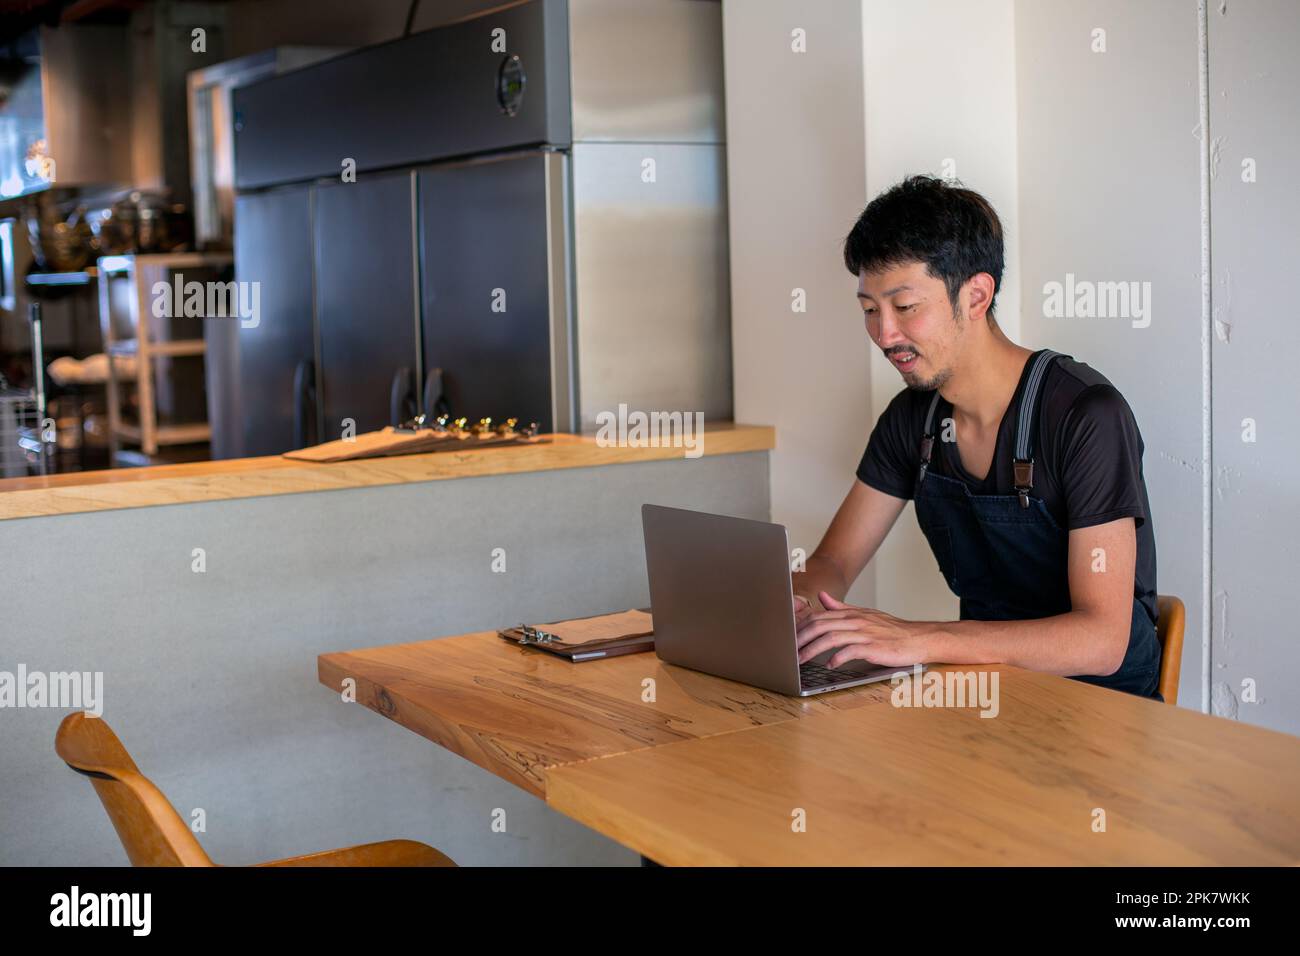 Ein Mann, der mit einem Laptop an einem Tisch saß, Besitzer und Manager eines kleinen Restaurants. Stockfoto